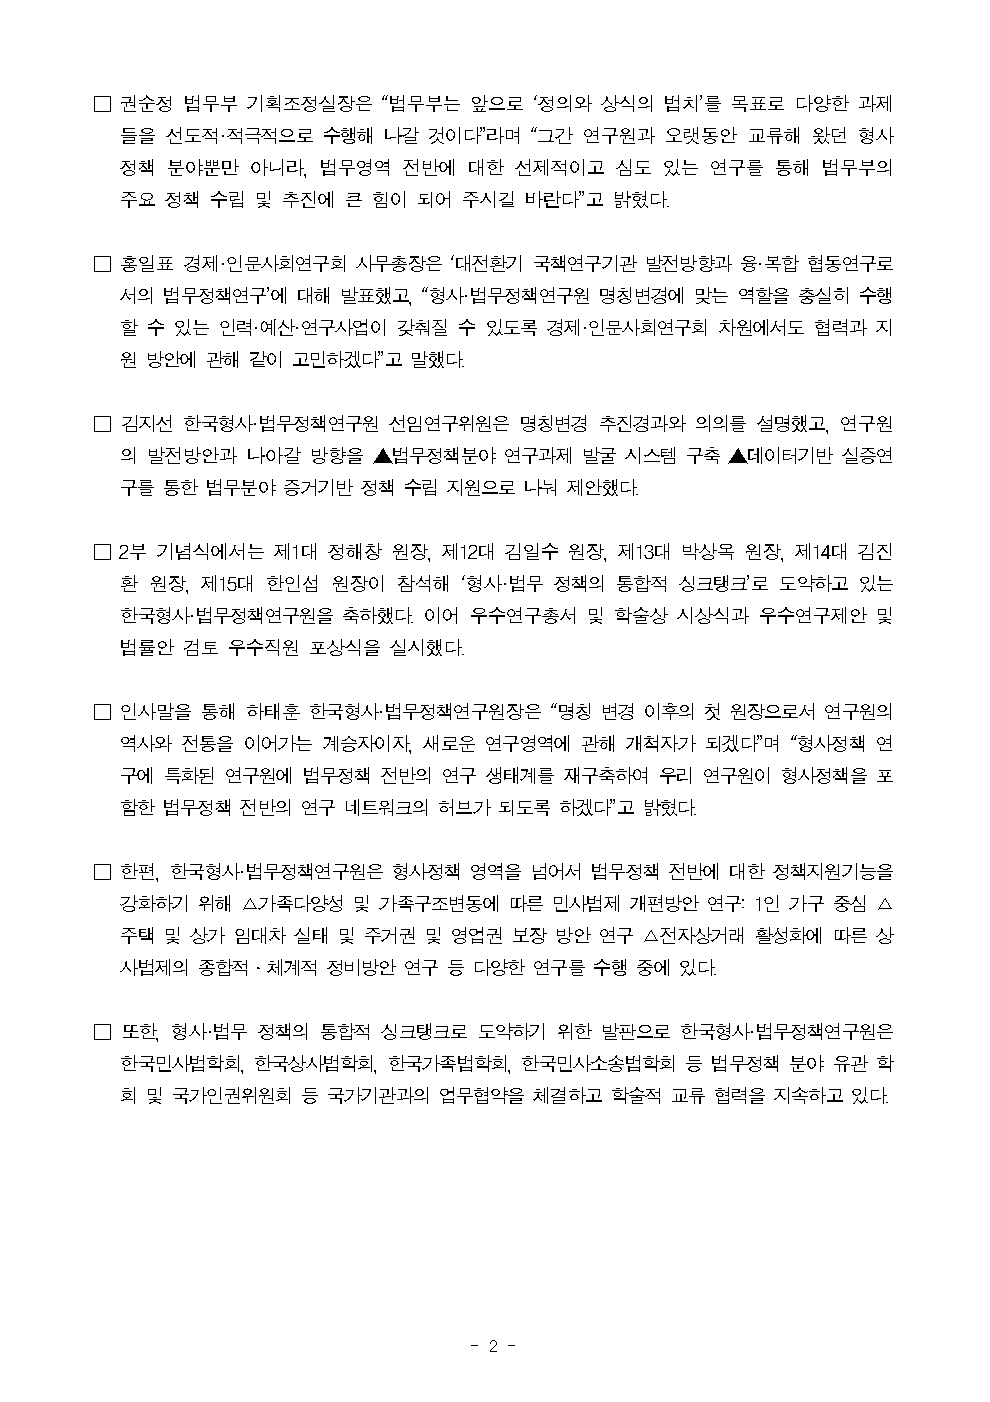 한국형사·법무정책연구원 명칭변경 1주년 세미나 및 기념식 개최 : 자세한 내용은 하단 pdf파일 참조